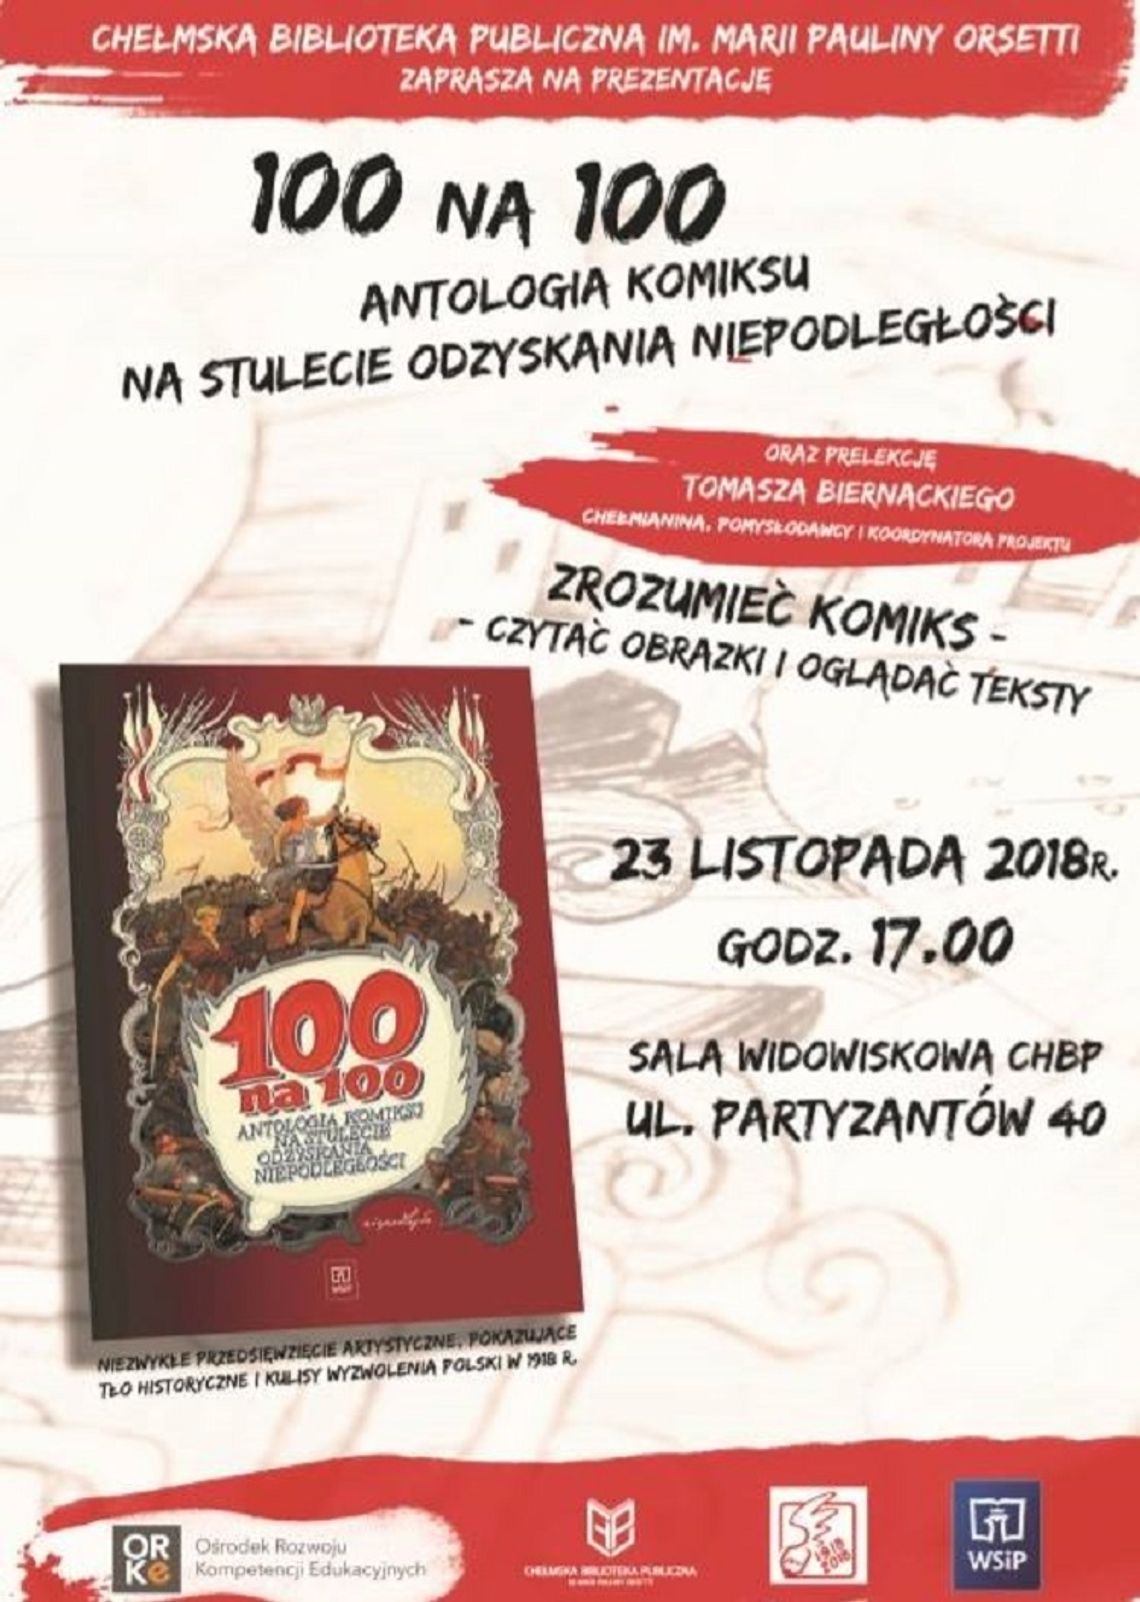 100 na 100 czyli Antologia komiksu w ChBP